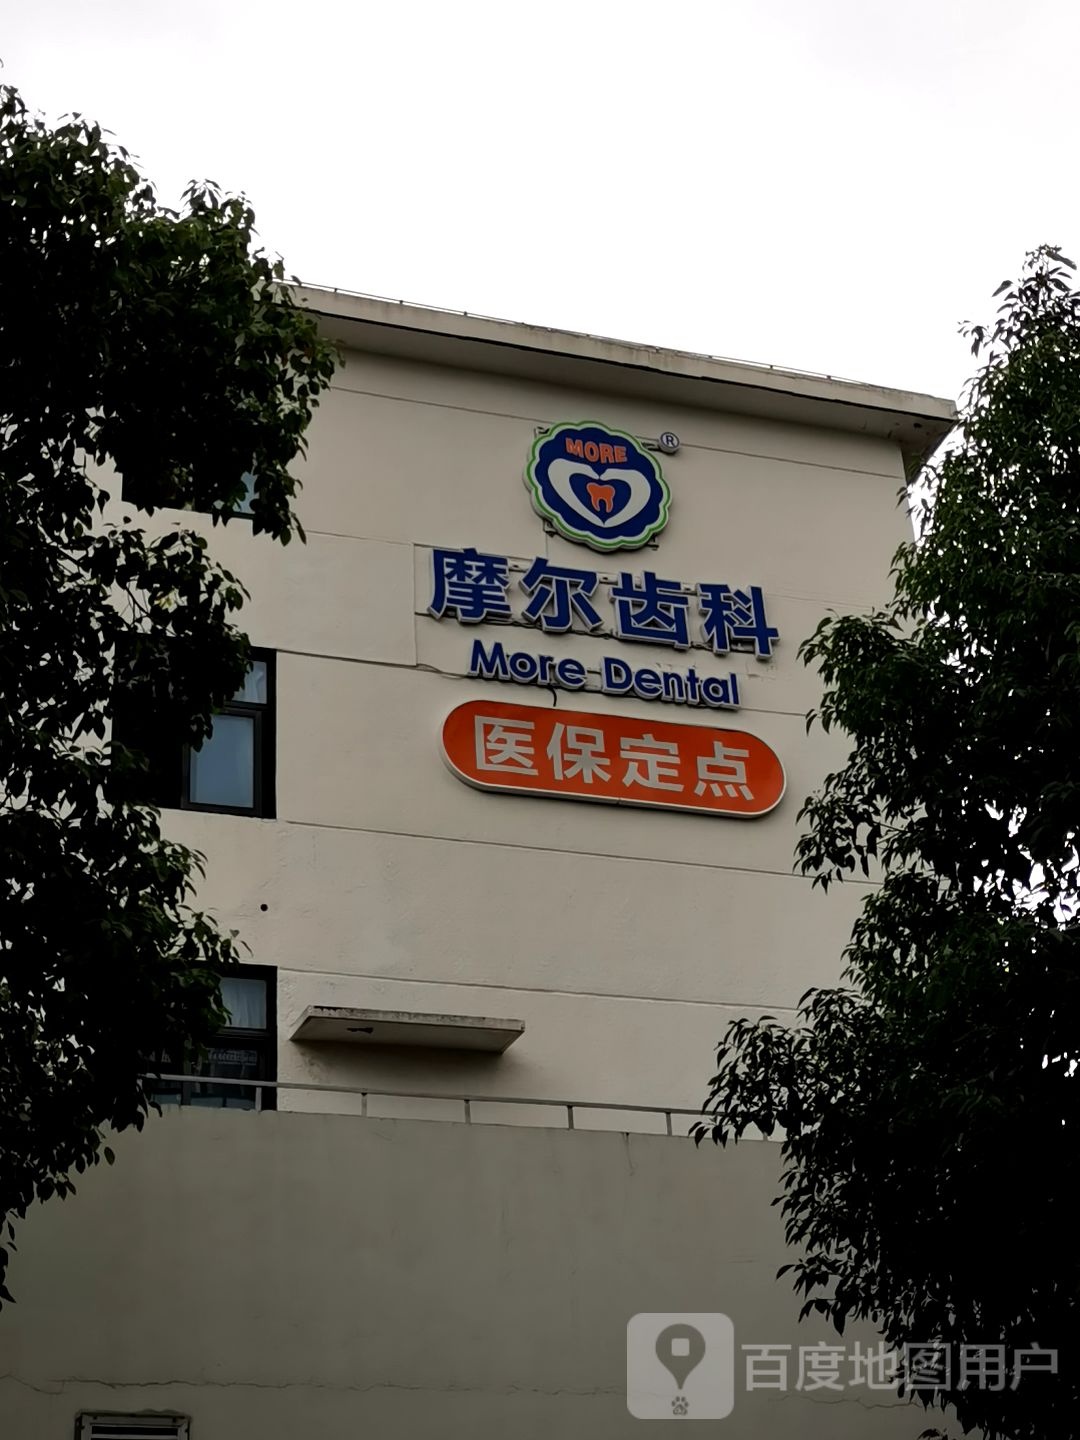 上海摩尔星华口腔医院